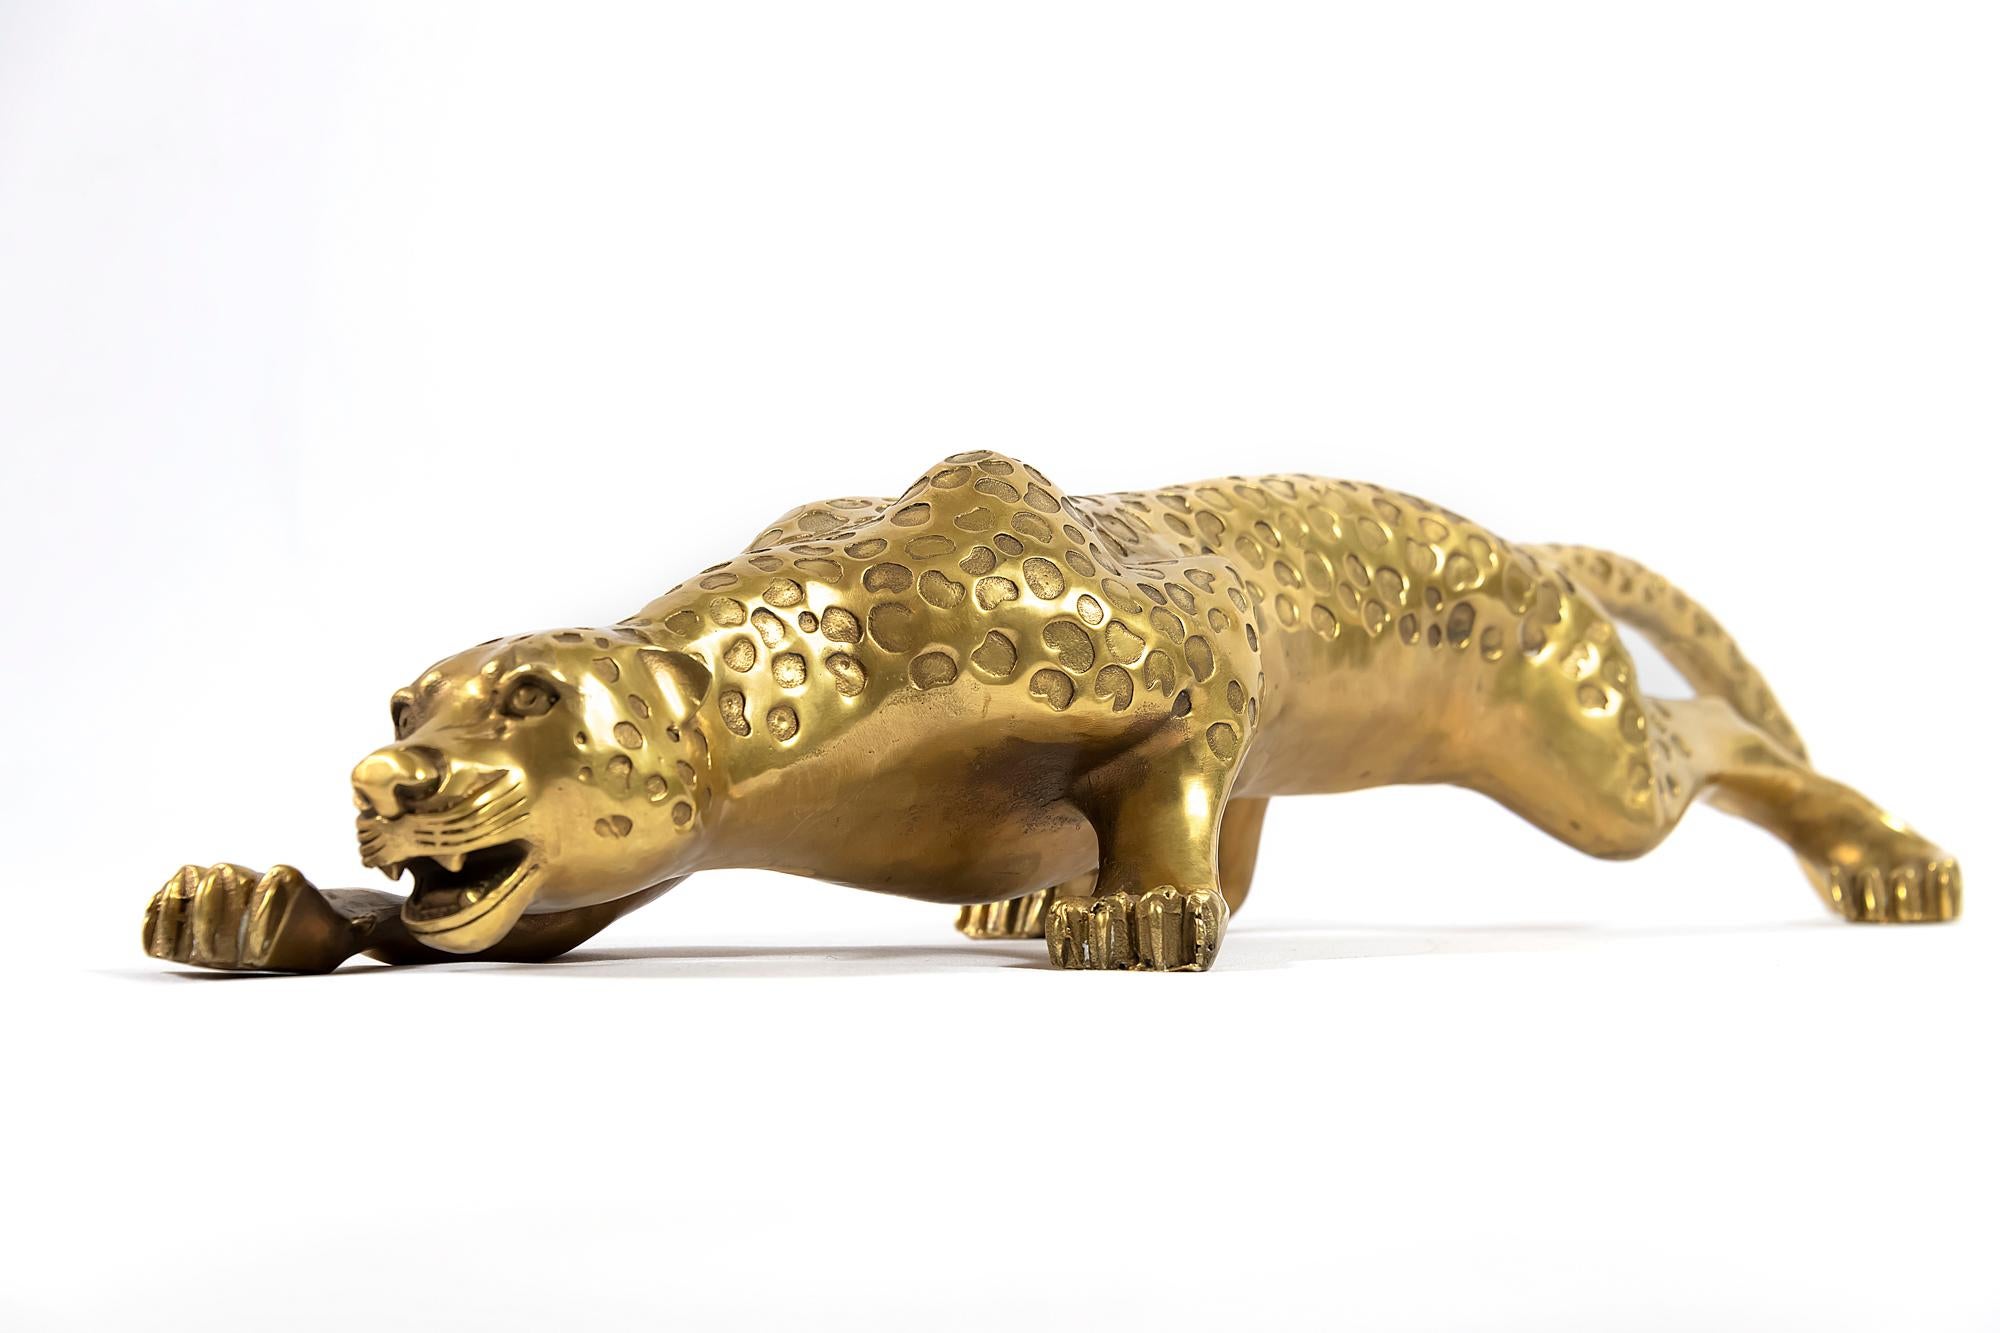 Bronze gepard sculpture in the shape of sneaking animal.